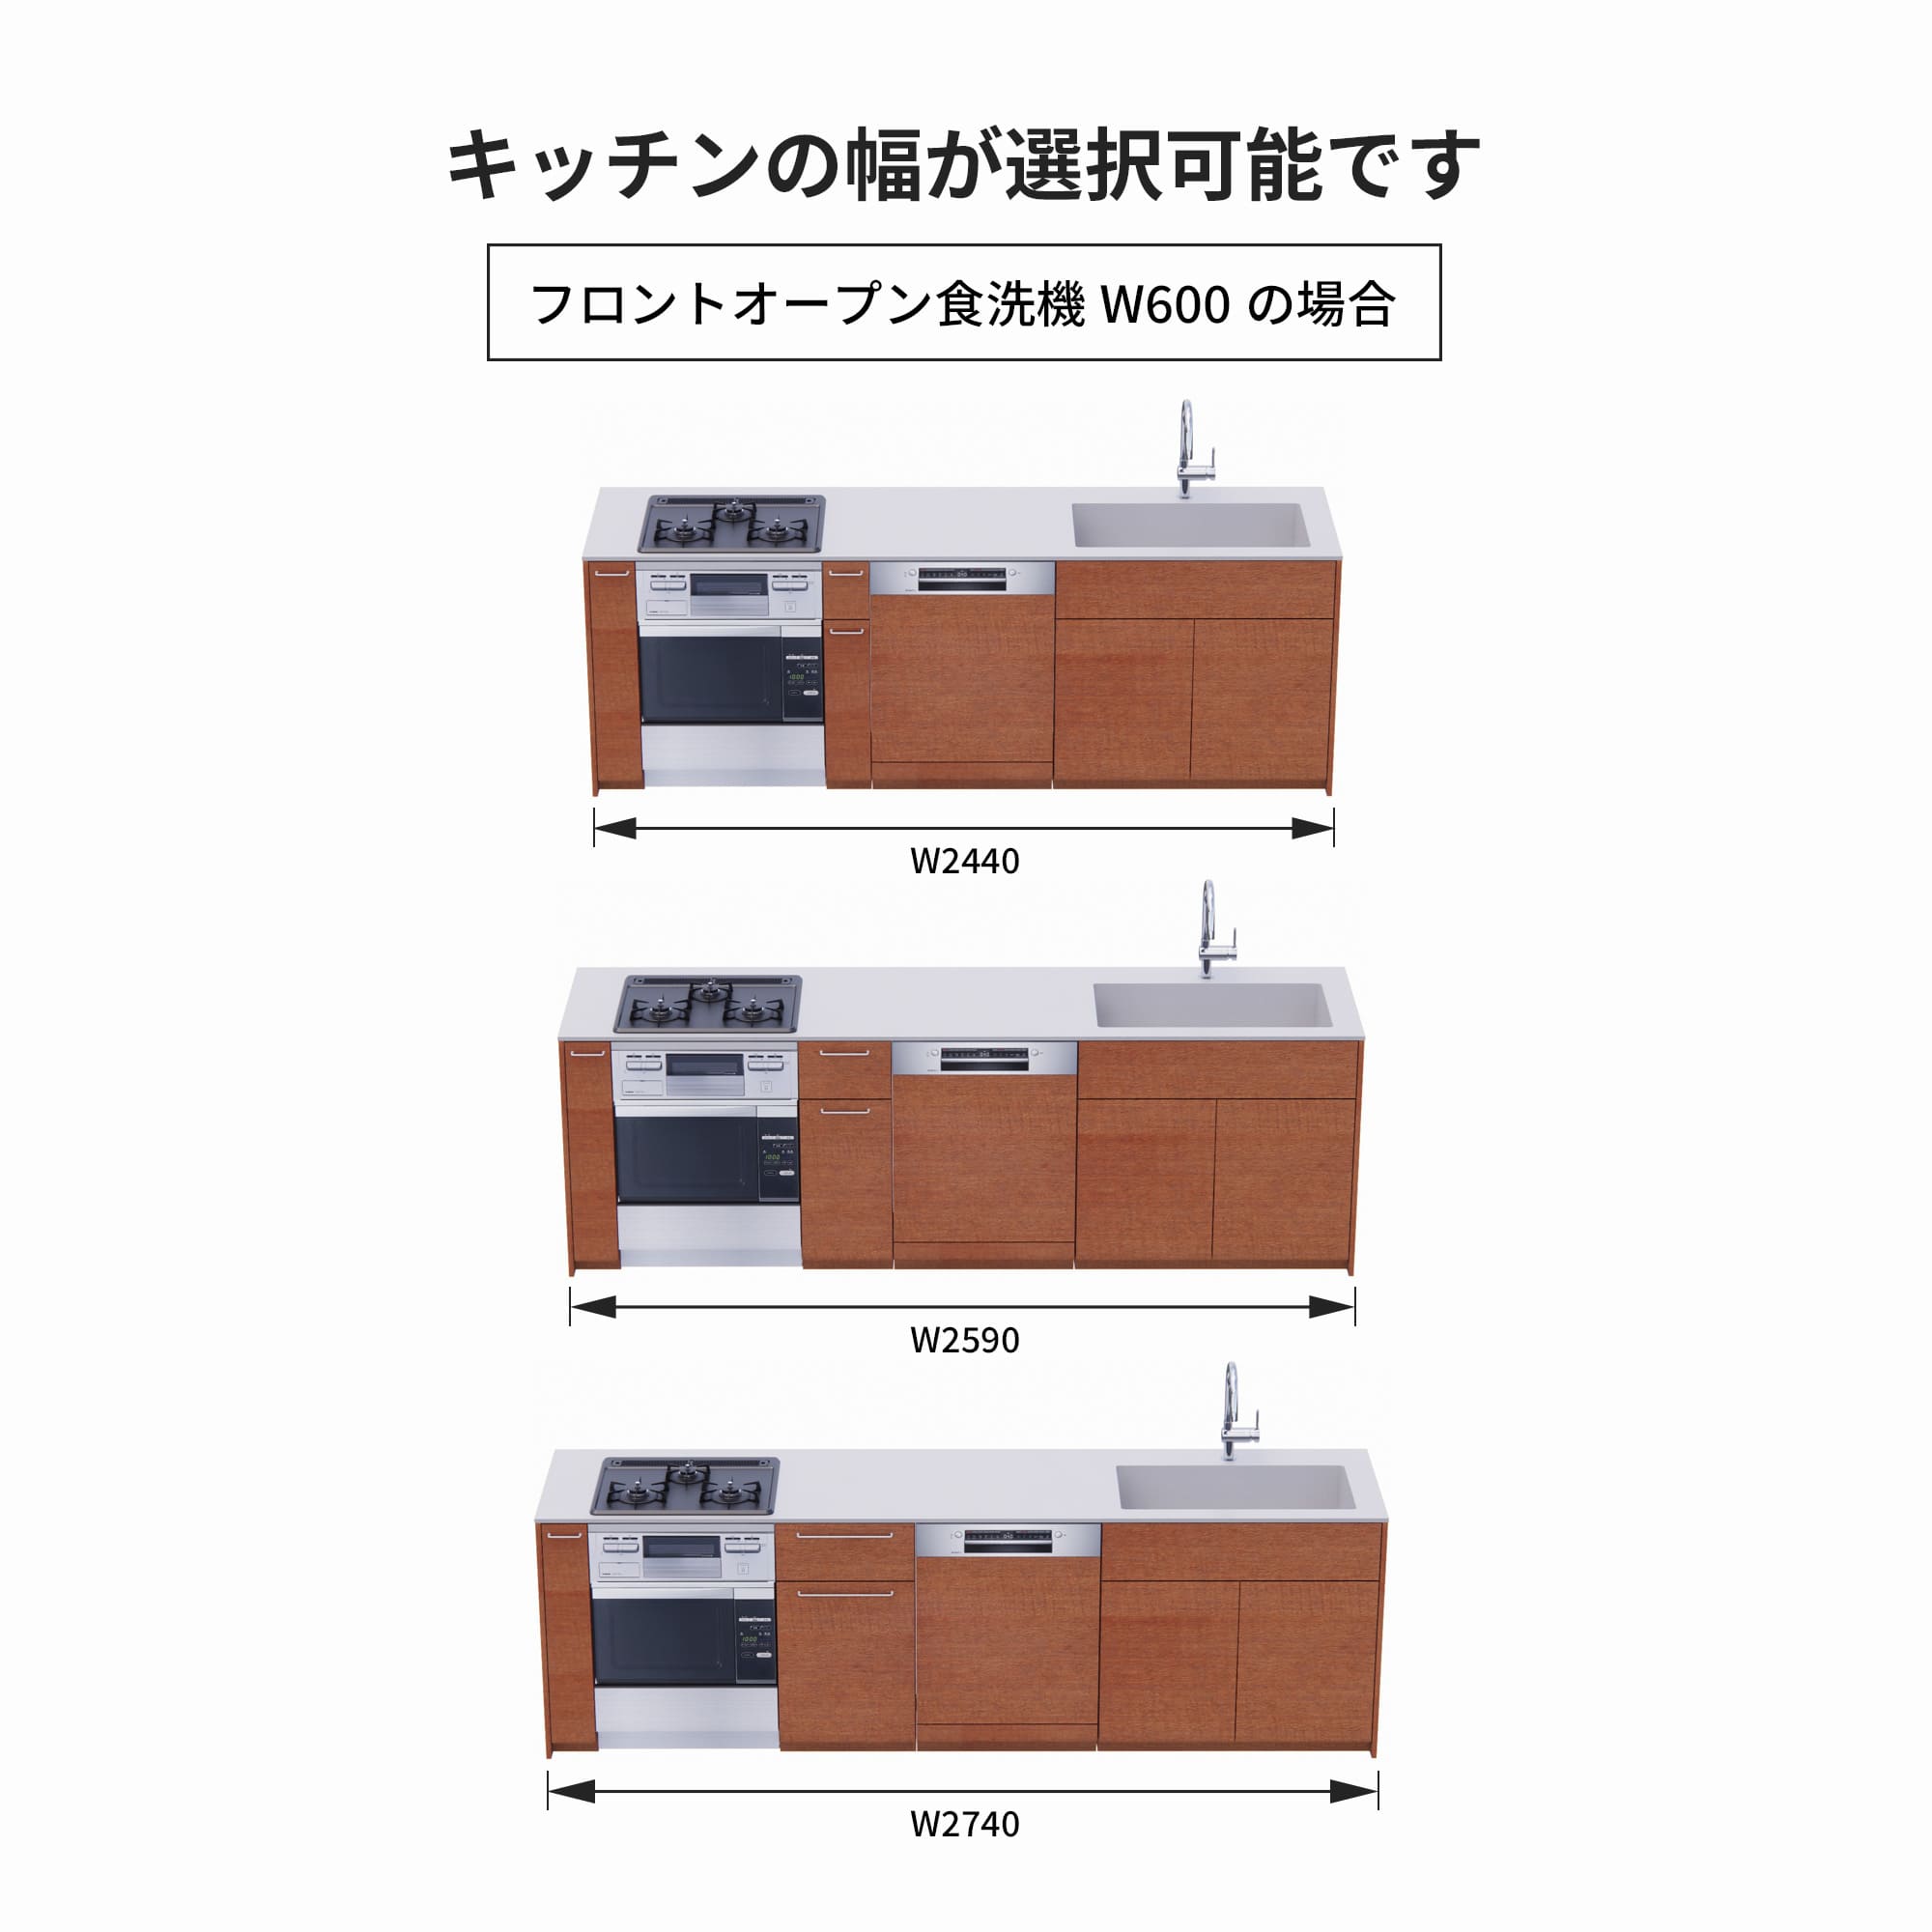 木製システムキッチン 壁付け型 W2440～2740・コンロあり / オーブンあり / 食洗機あり KB-KC022-28-G183 フロントオープン600の場合